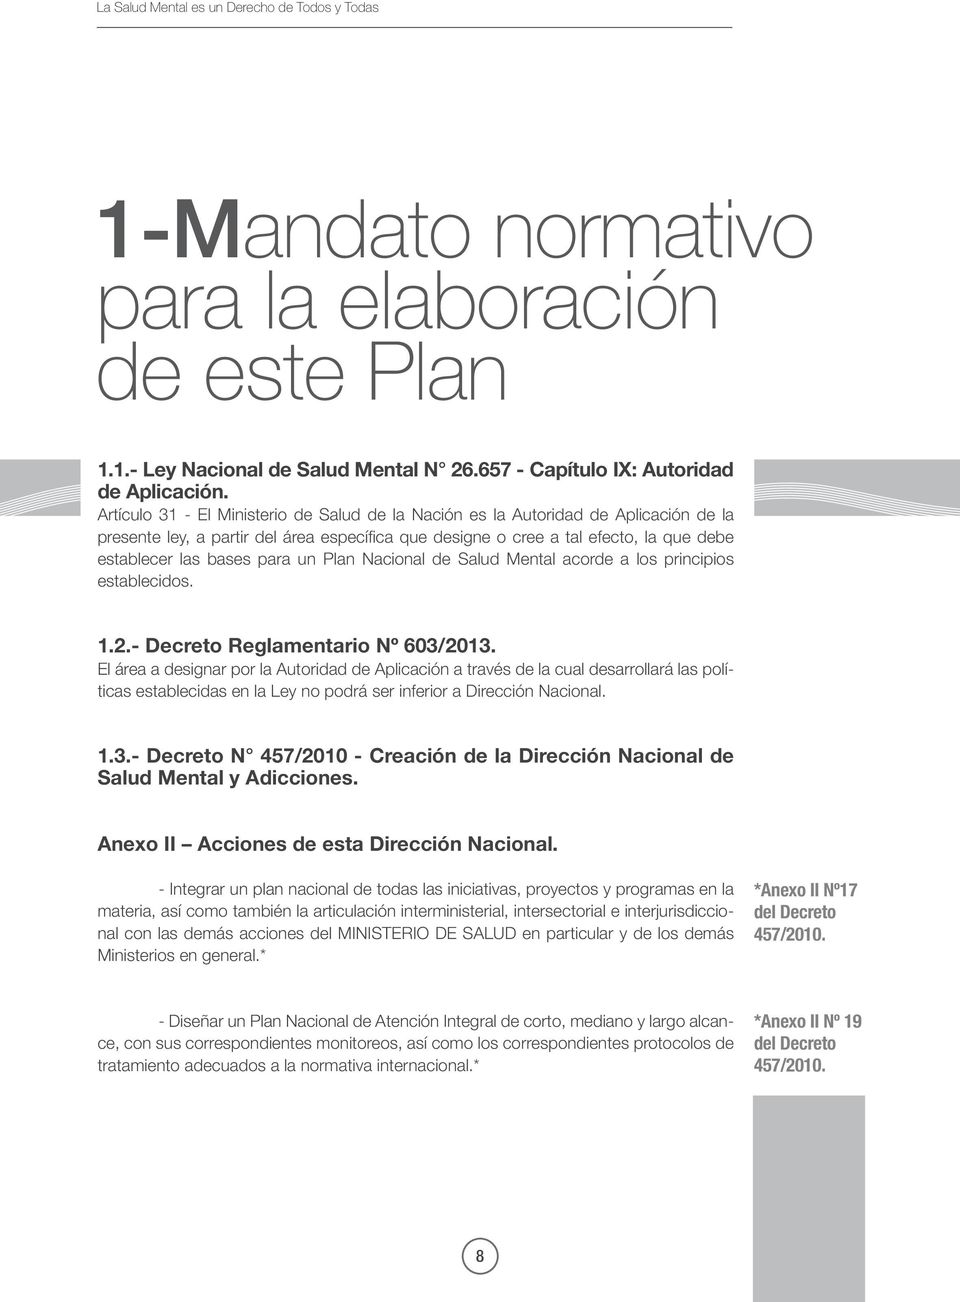 un Plan Nacional de Salud Mental acorde a los principios establecidos. 1.2.- Decreto Reglamentario Nº 603/2013.